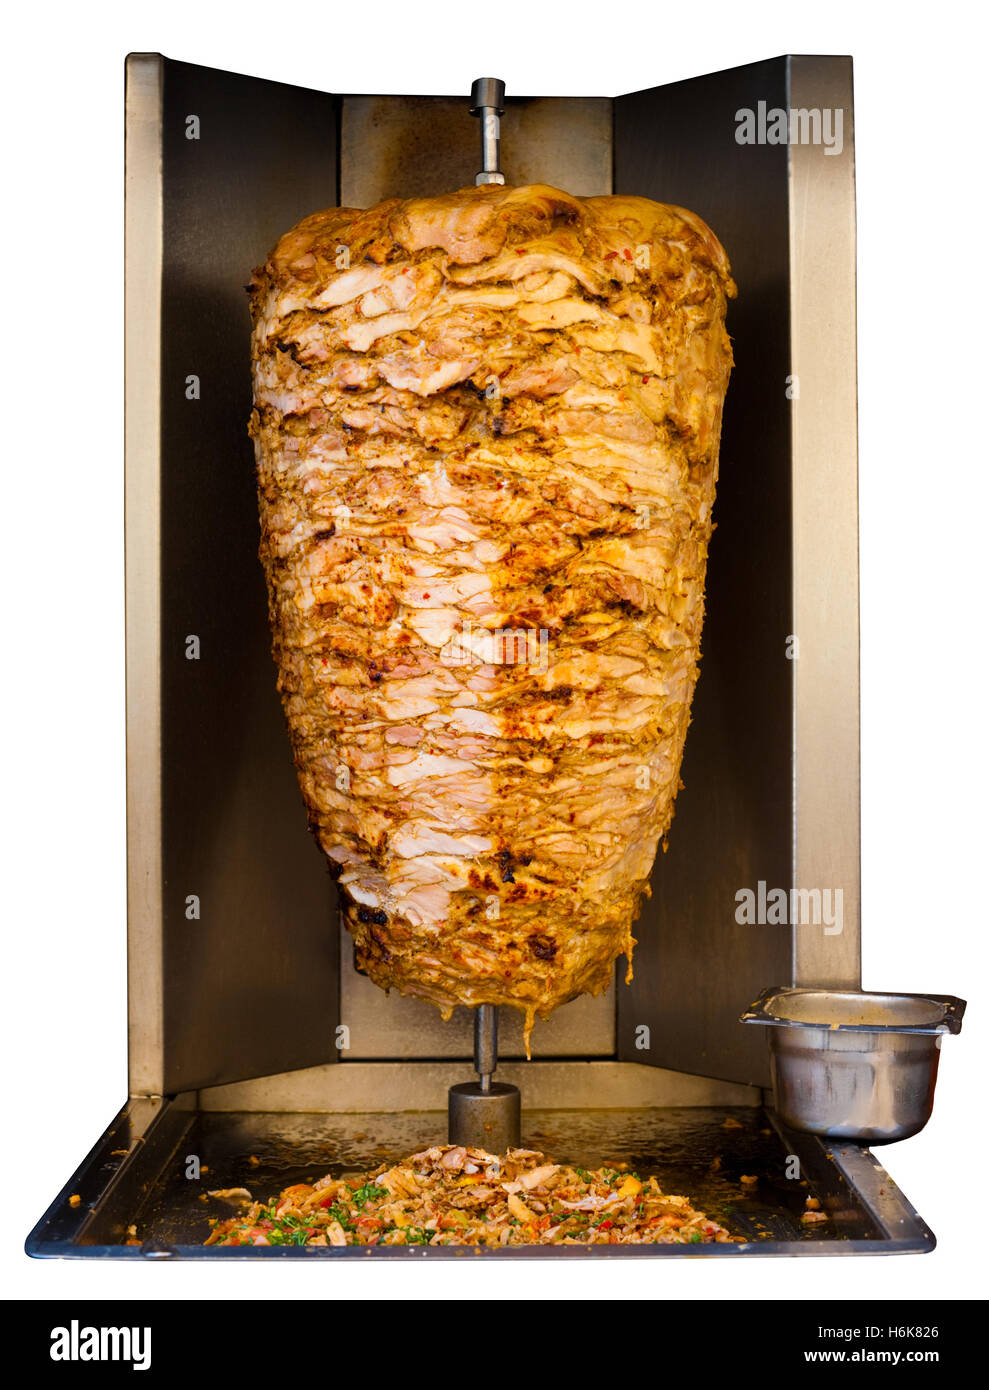 Brochettes de poulet grillé, une viande traditionnels servis à l'intérieur d'un sandwich shawarma dans les pays arabes au Moyen-Orient, dans la cuisine Banque D'Images